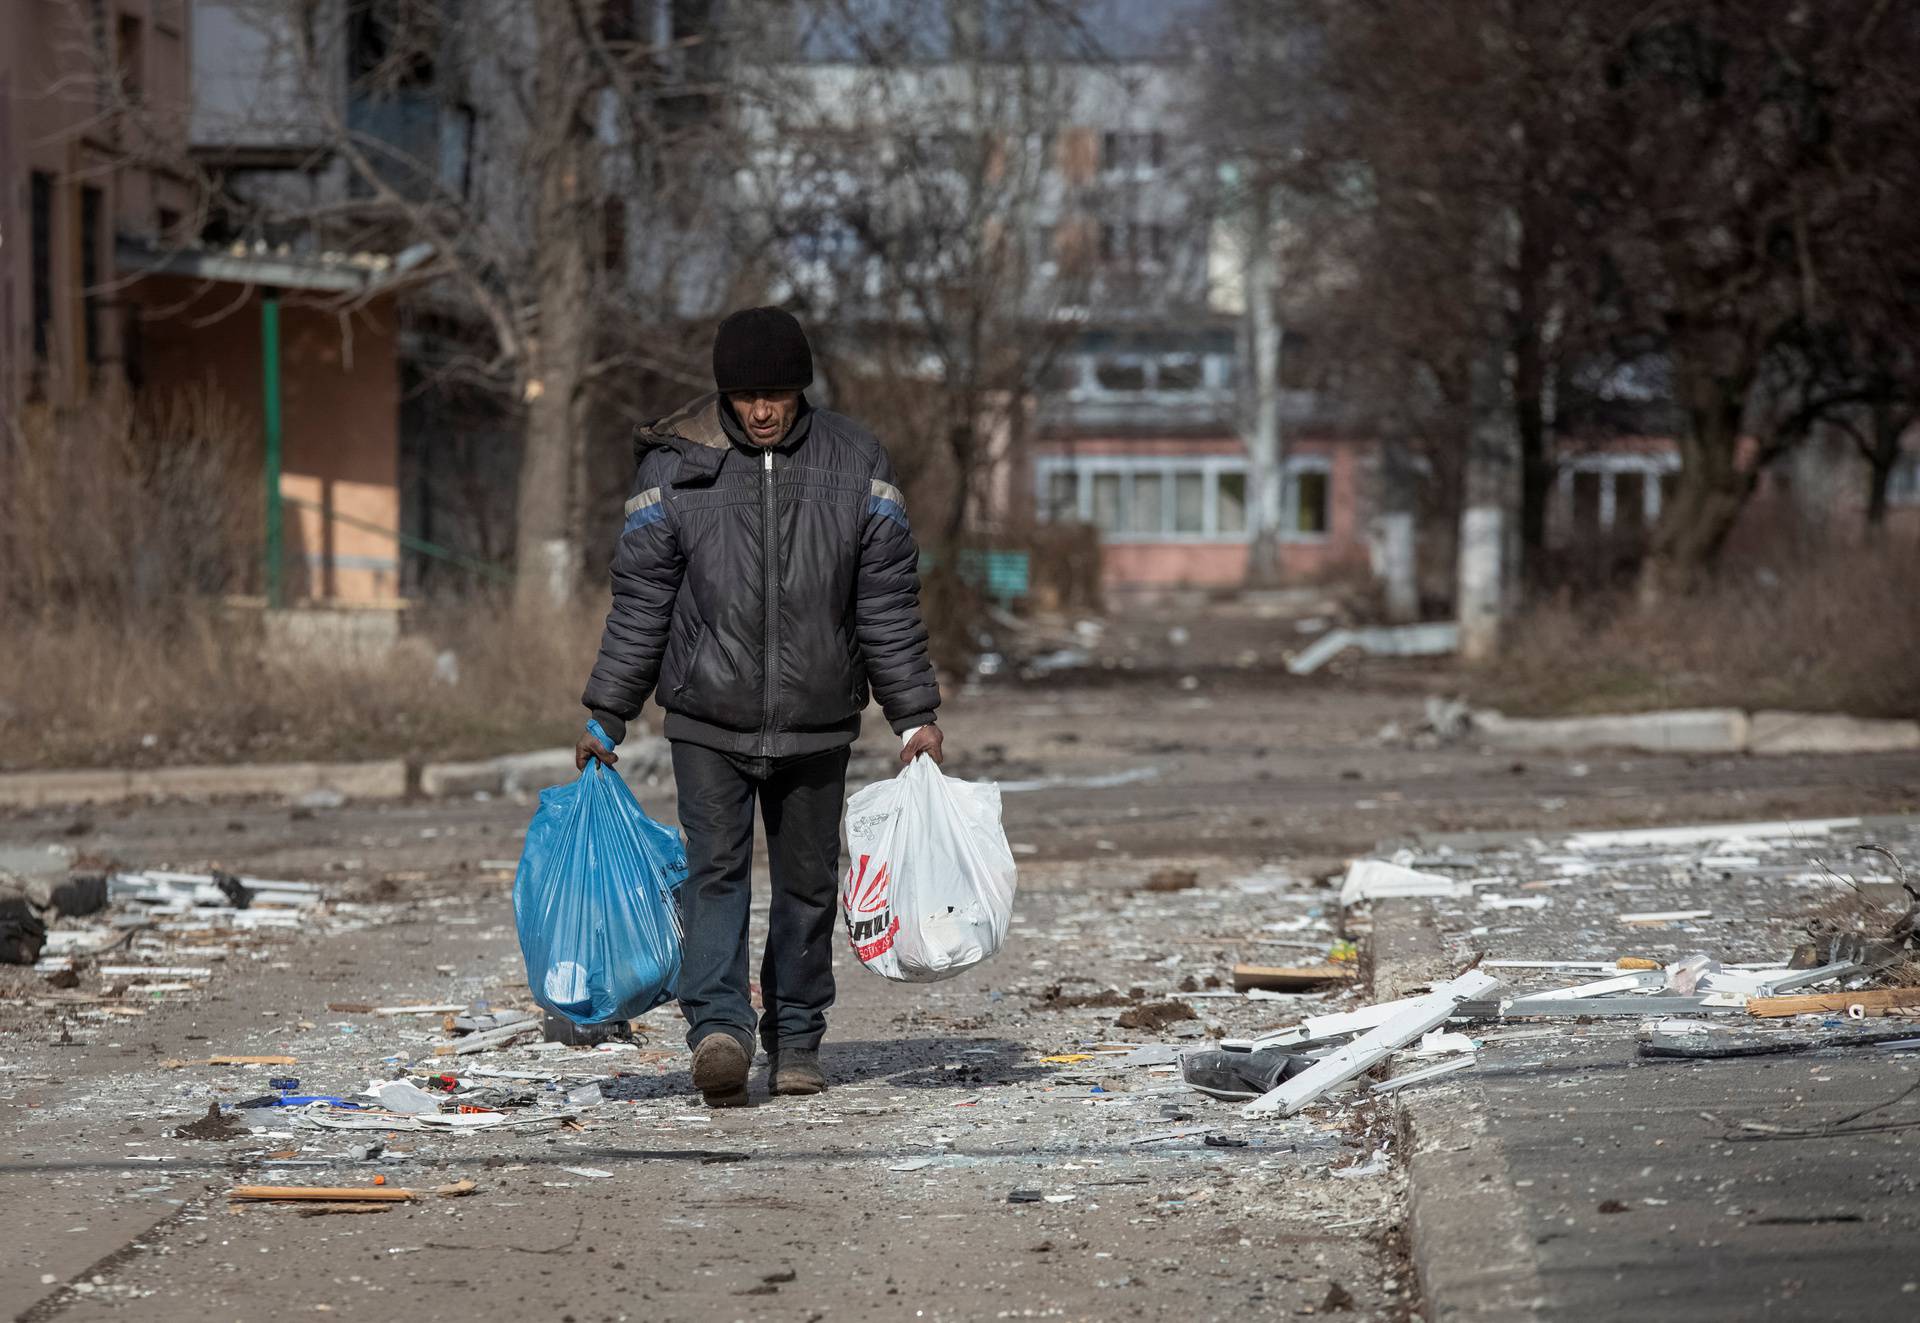 A local resident walks on an empty street in Bakhmut